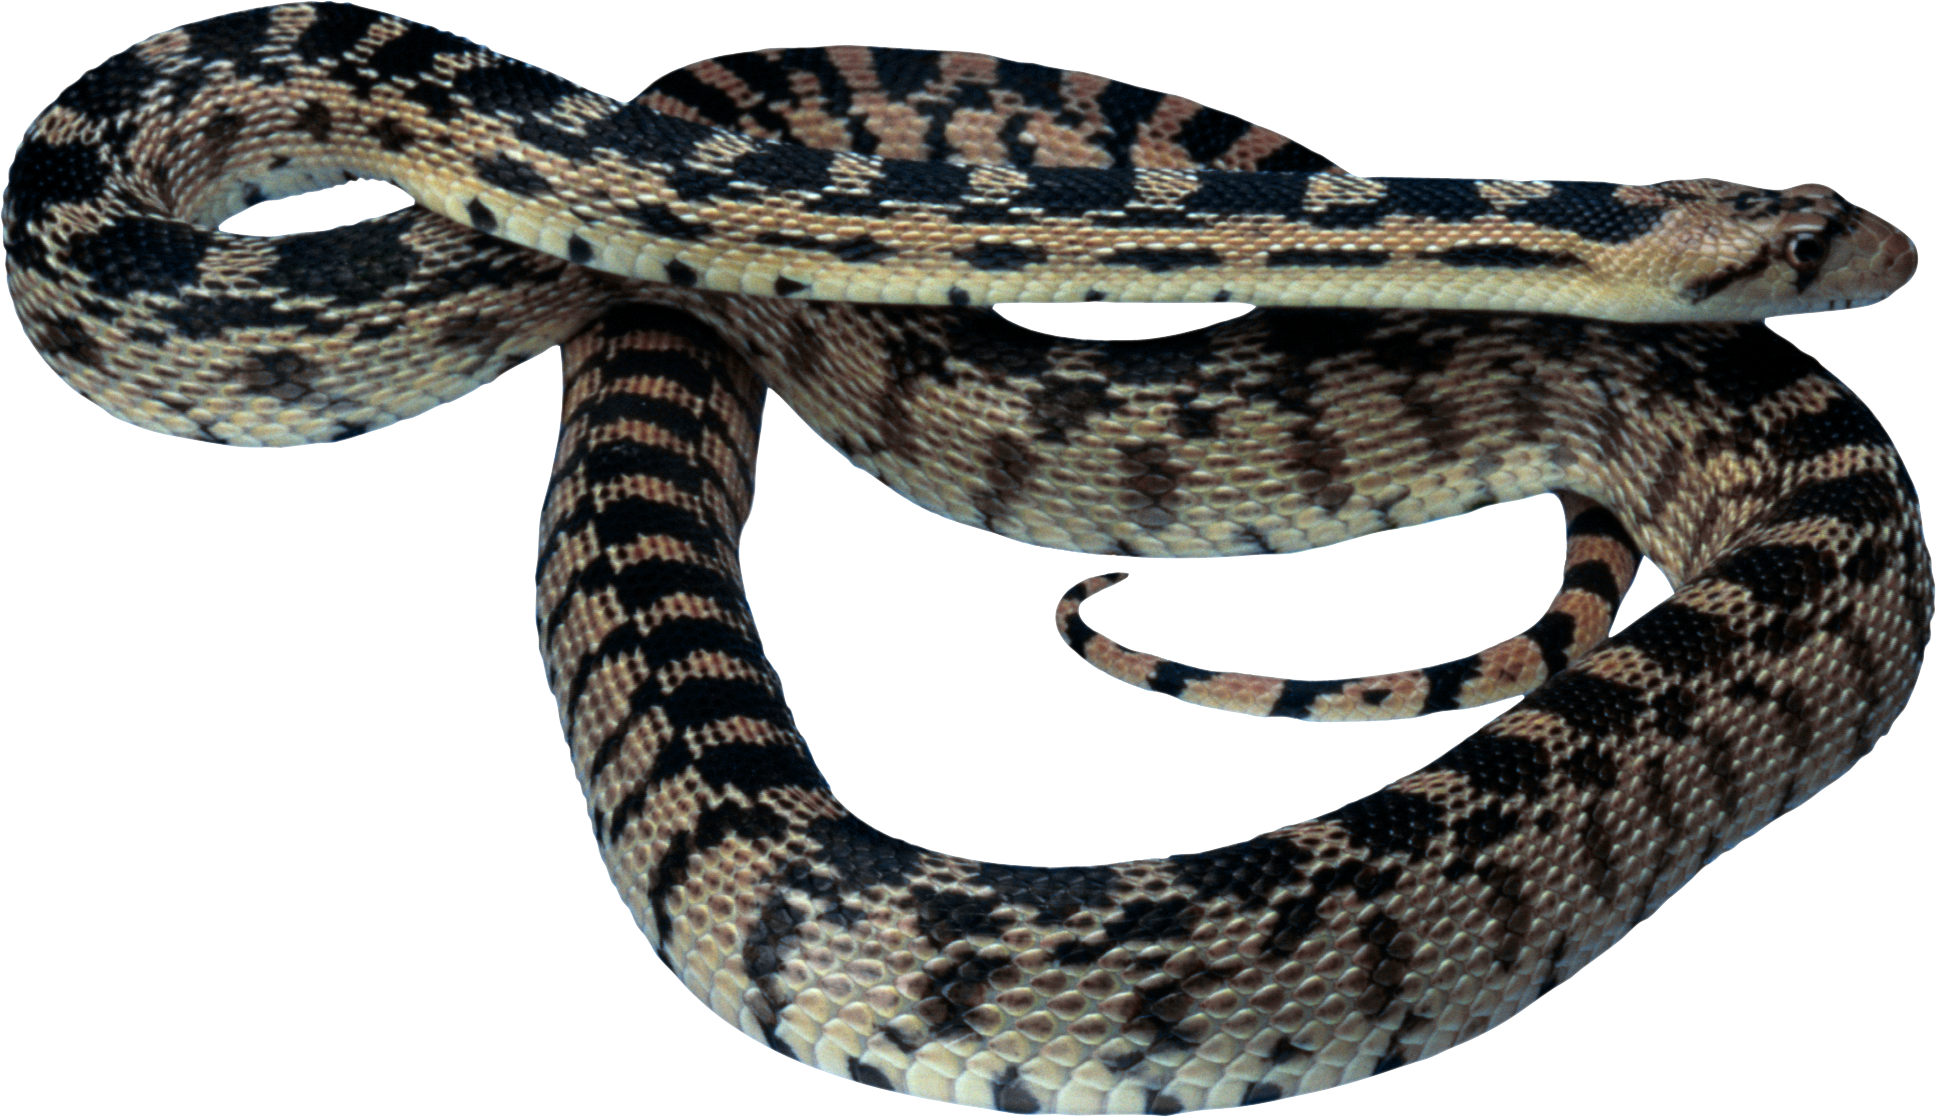 cobra clipart coiled snake